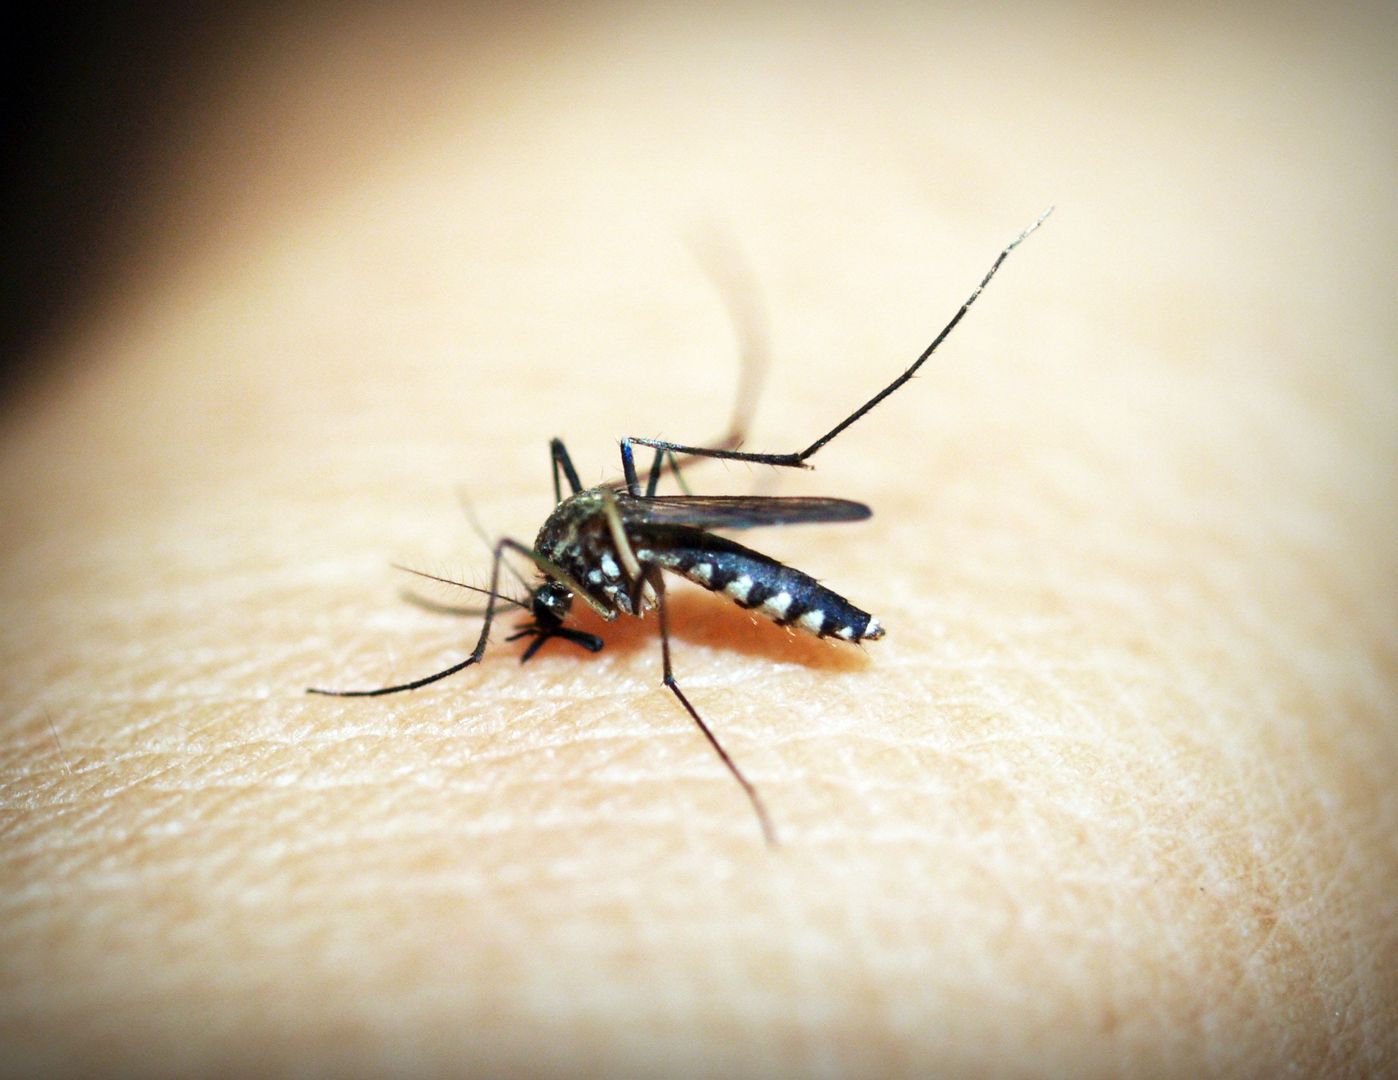 Plaga komarów. Znamy sposób na walkę z kąsającymi owadami